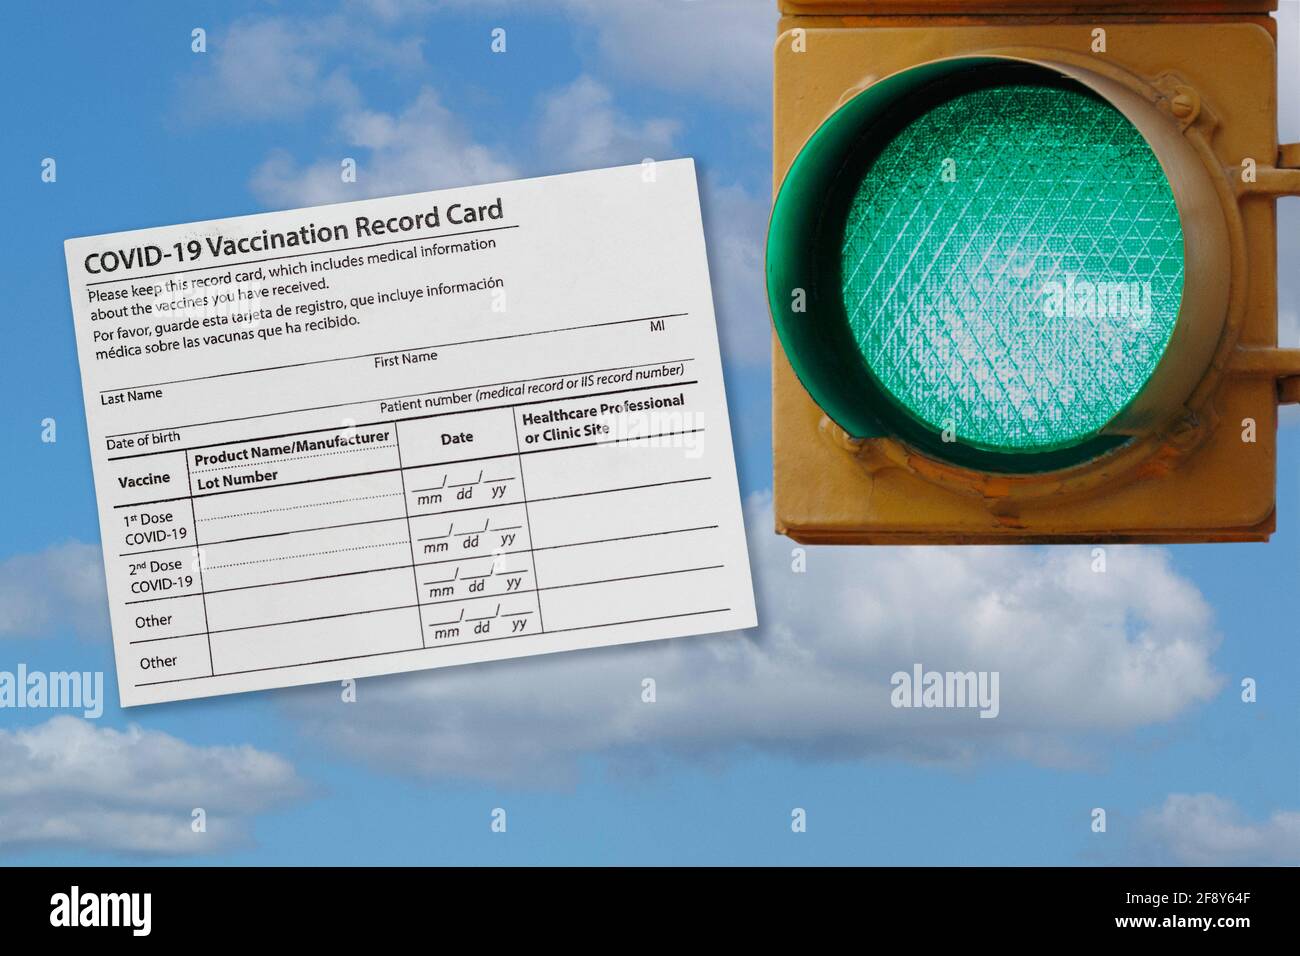 fotomontaje de la tarjeta de registro de vacunación covid-19 y un semáforo verde contra un cielo, que representa la apertura a medida que más personas son vacunadas Foto de stock